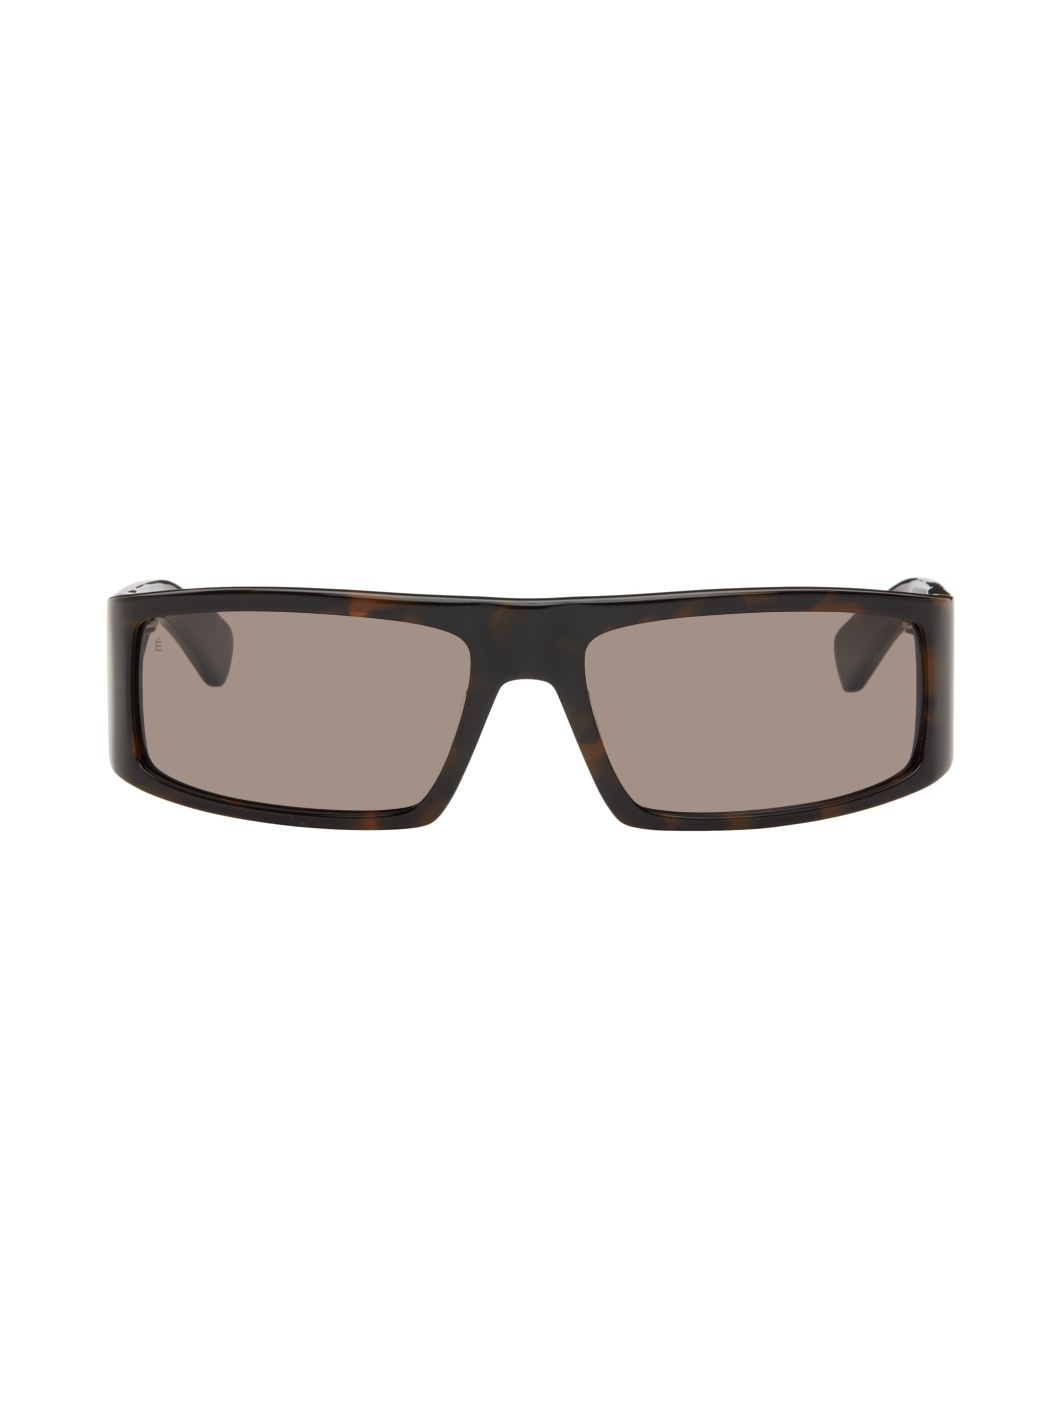 Tortoiseshell Nightlife Sunglasses - 1